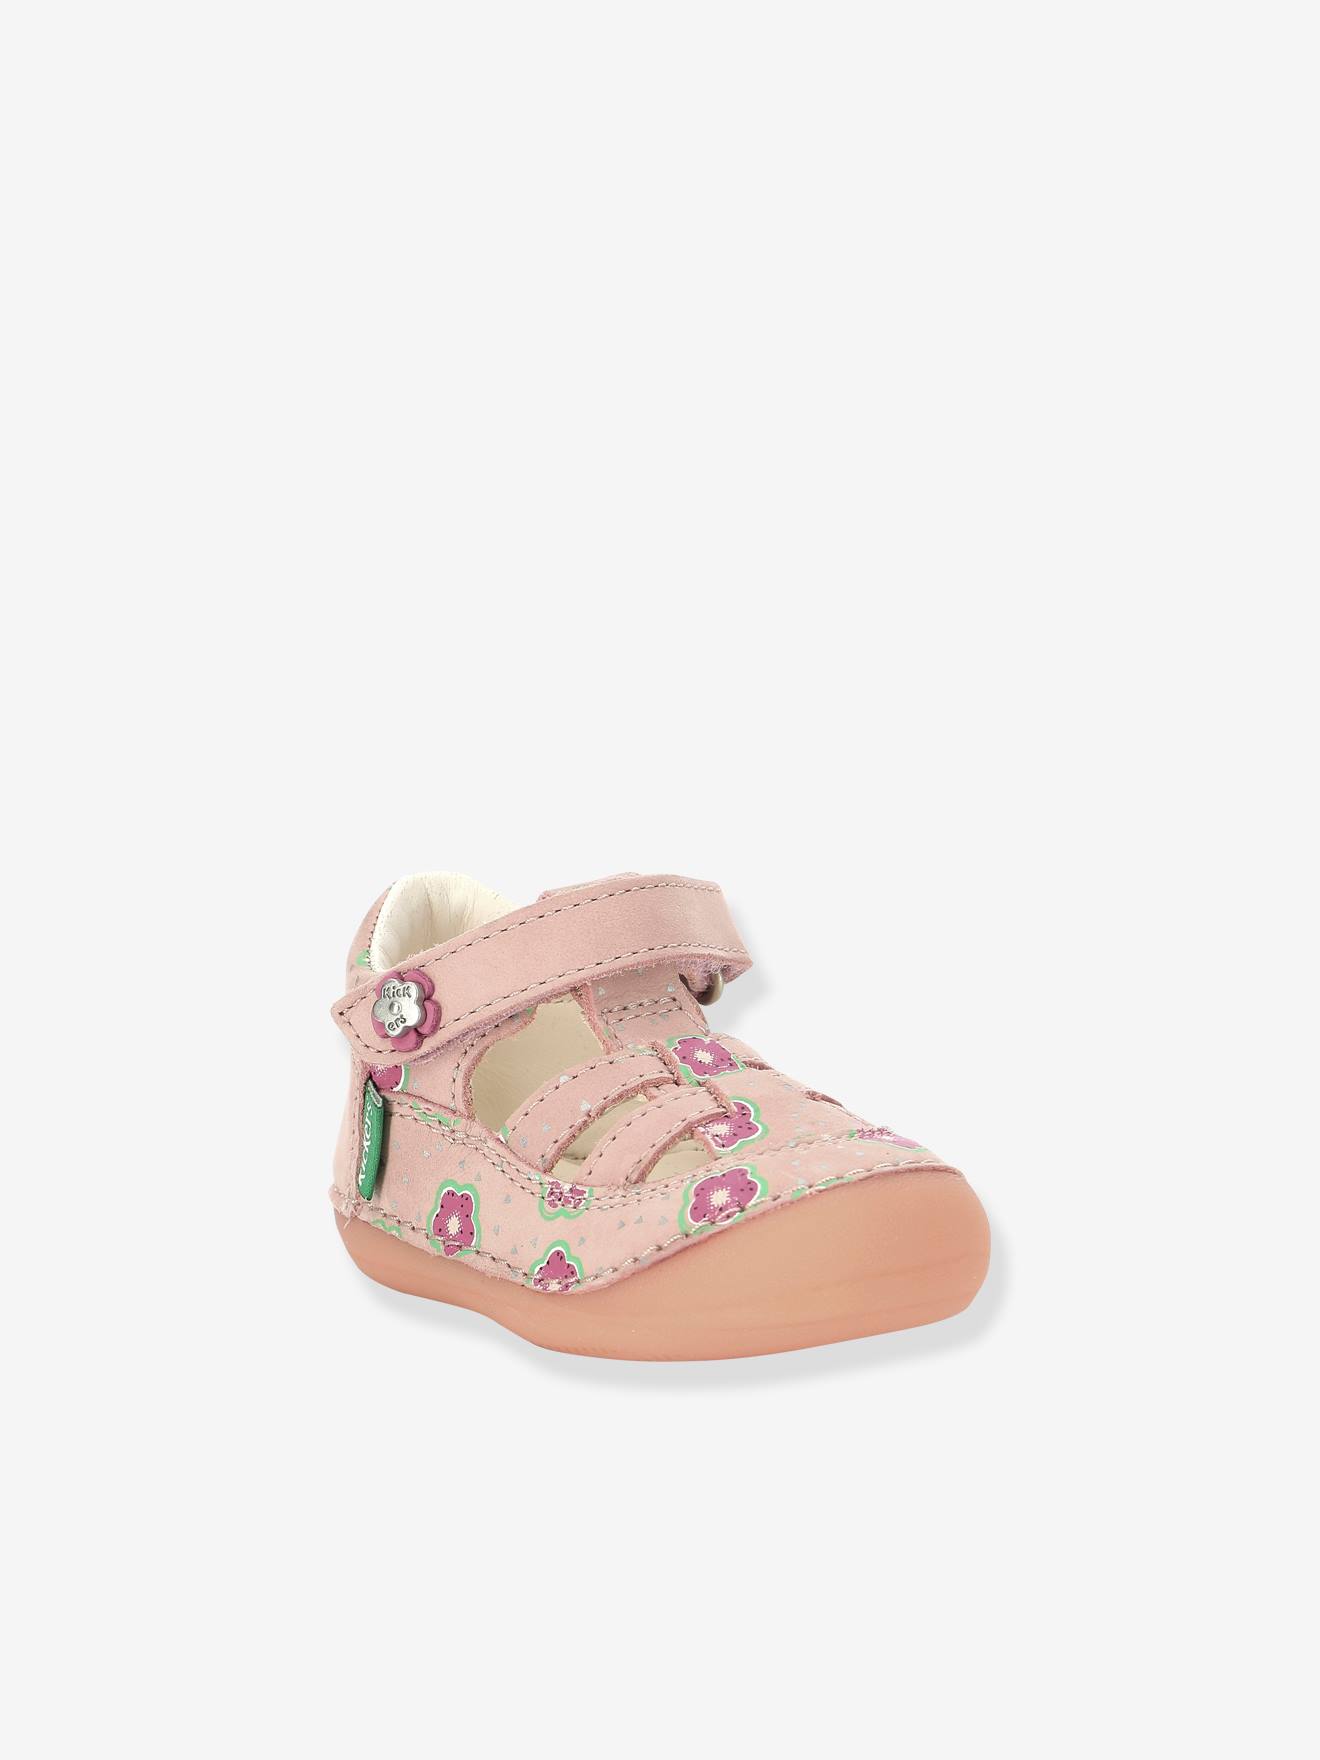 Visiter la boutique KickersKickers Sushy Chaussure Baby Bébé Fille 